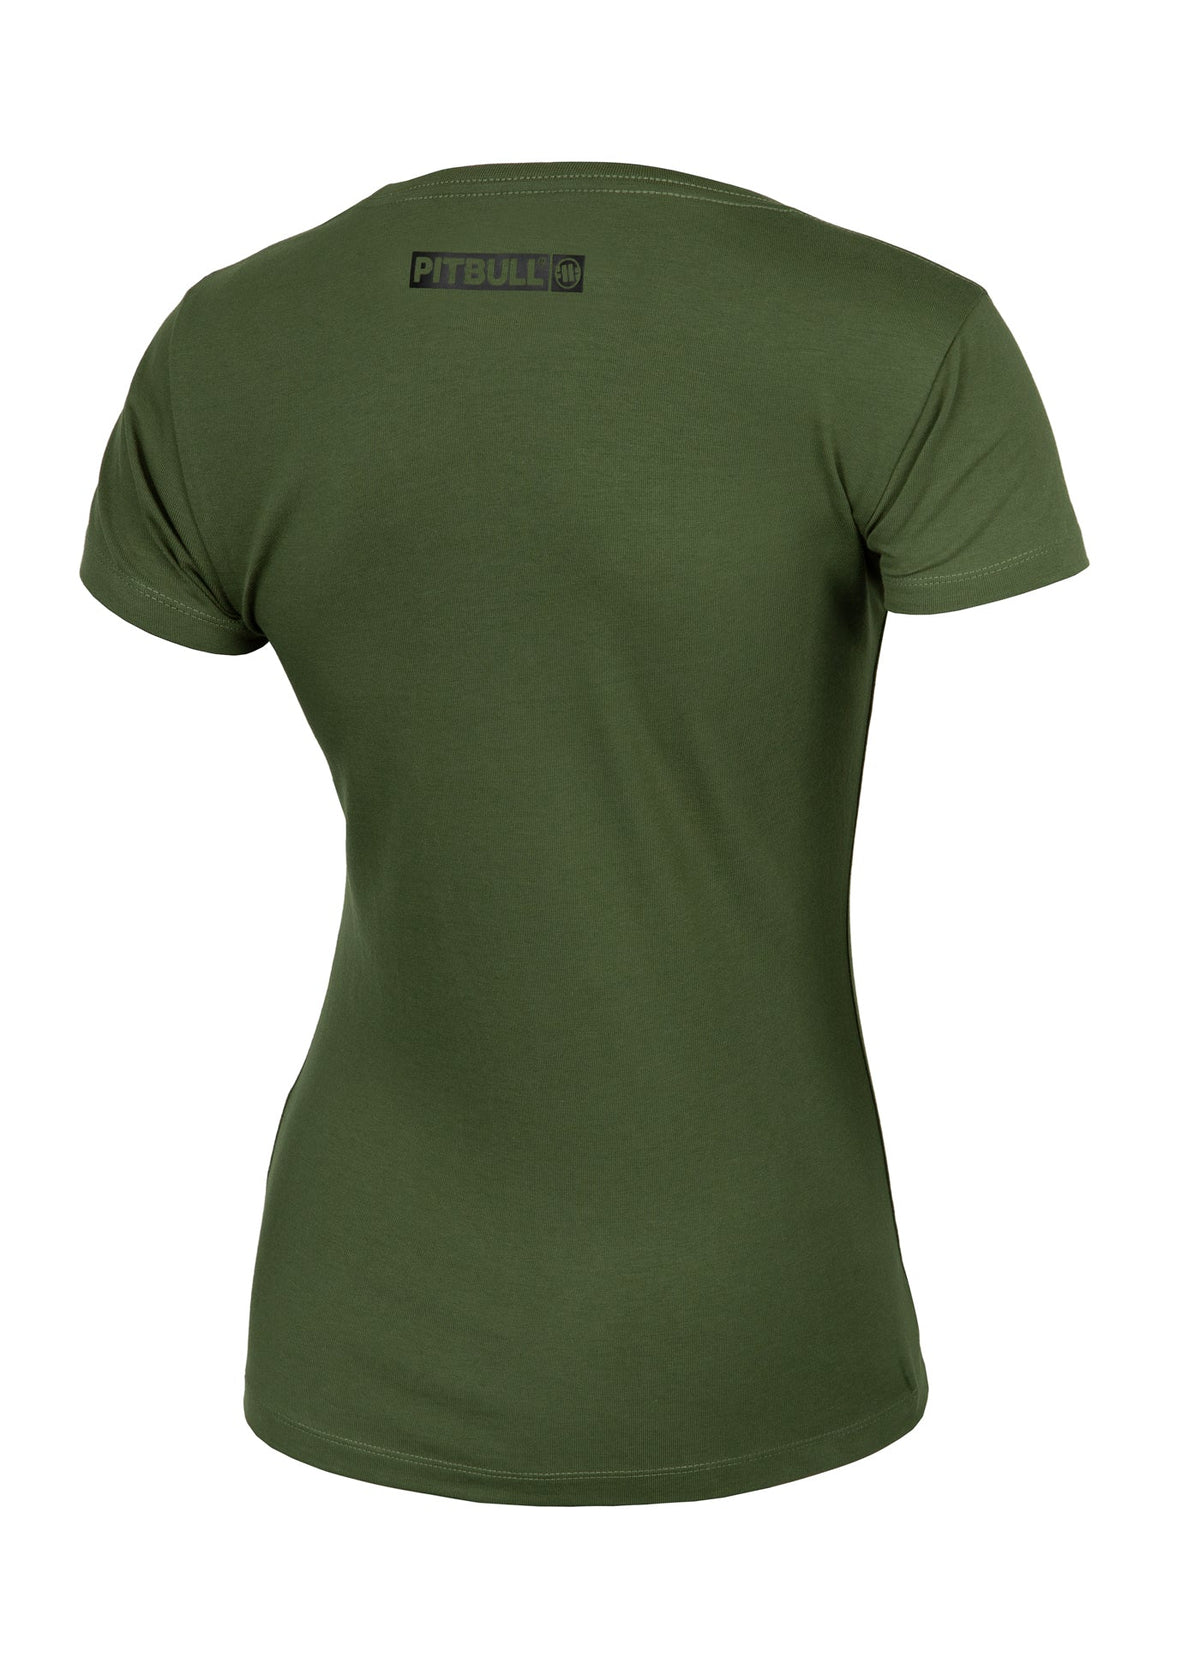 HILLTOP REGULAR Olive T-shirt